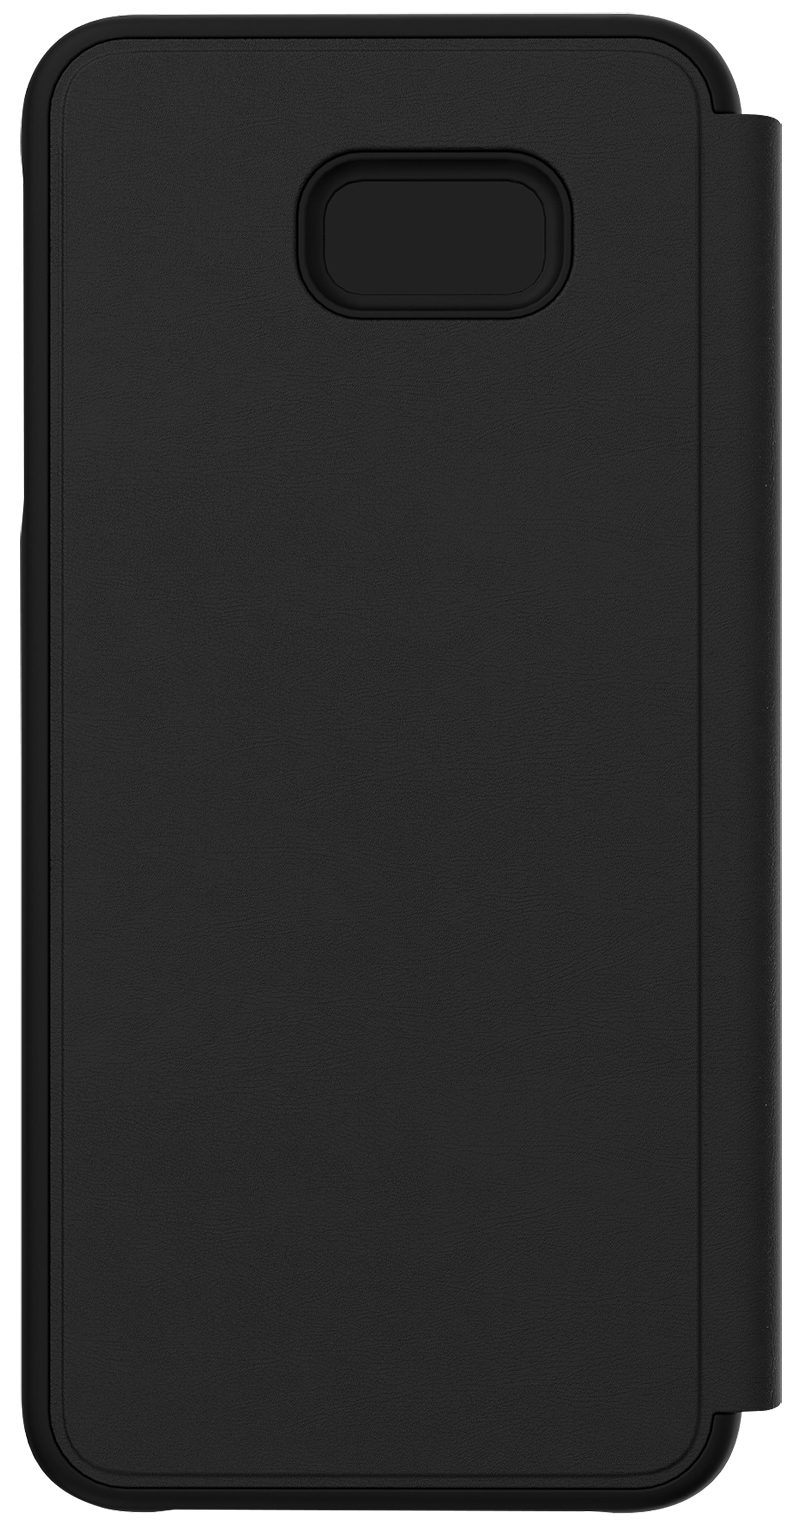 Etui folio Samsung Galaxy J4+ noir